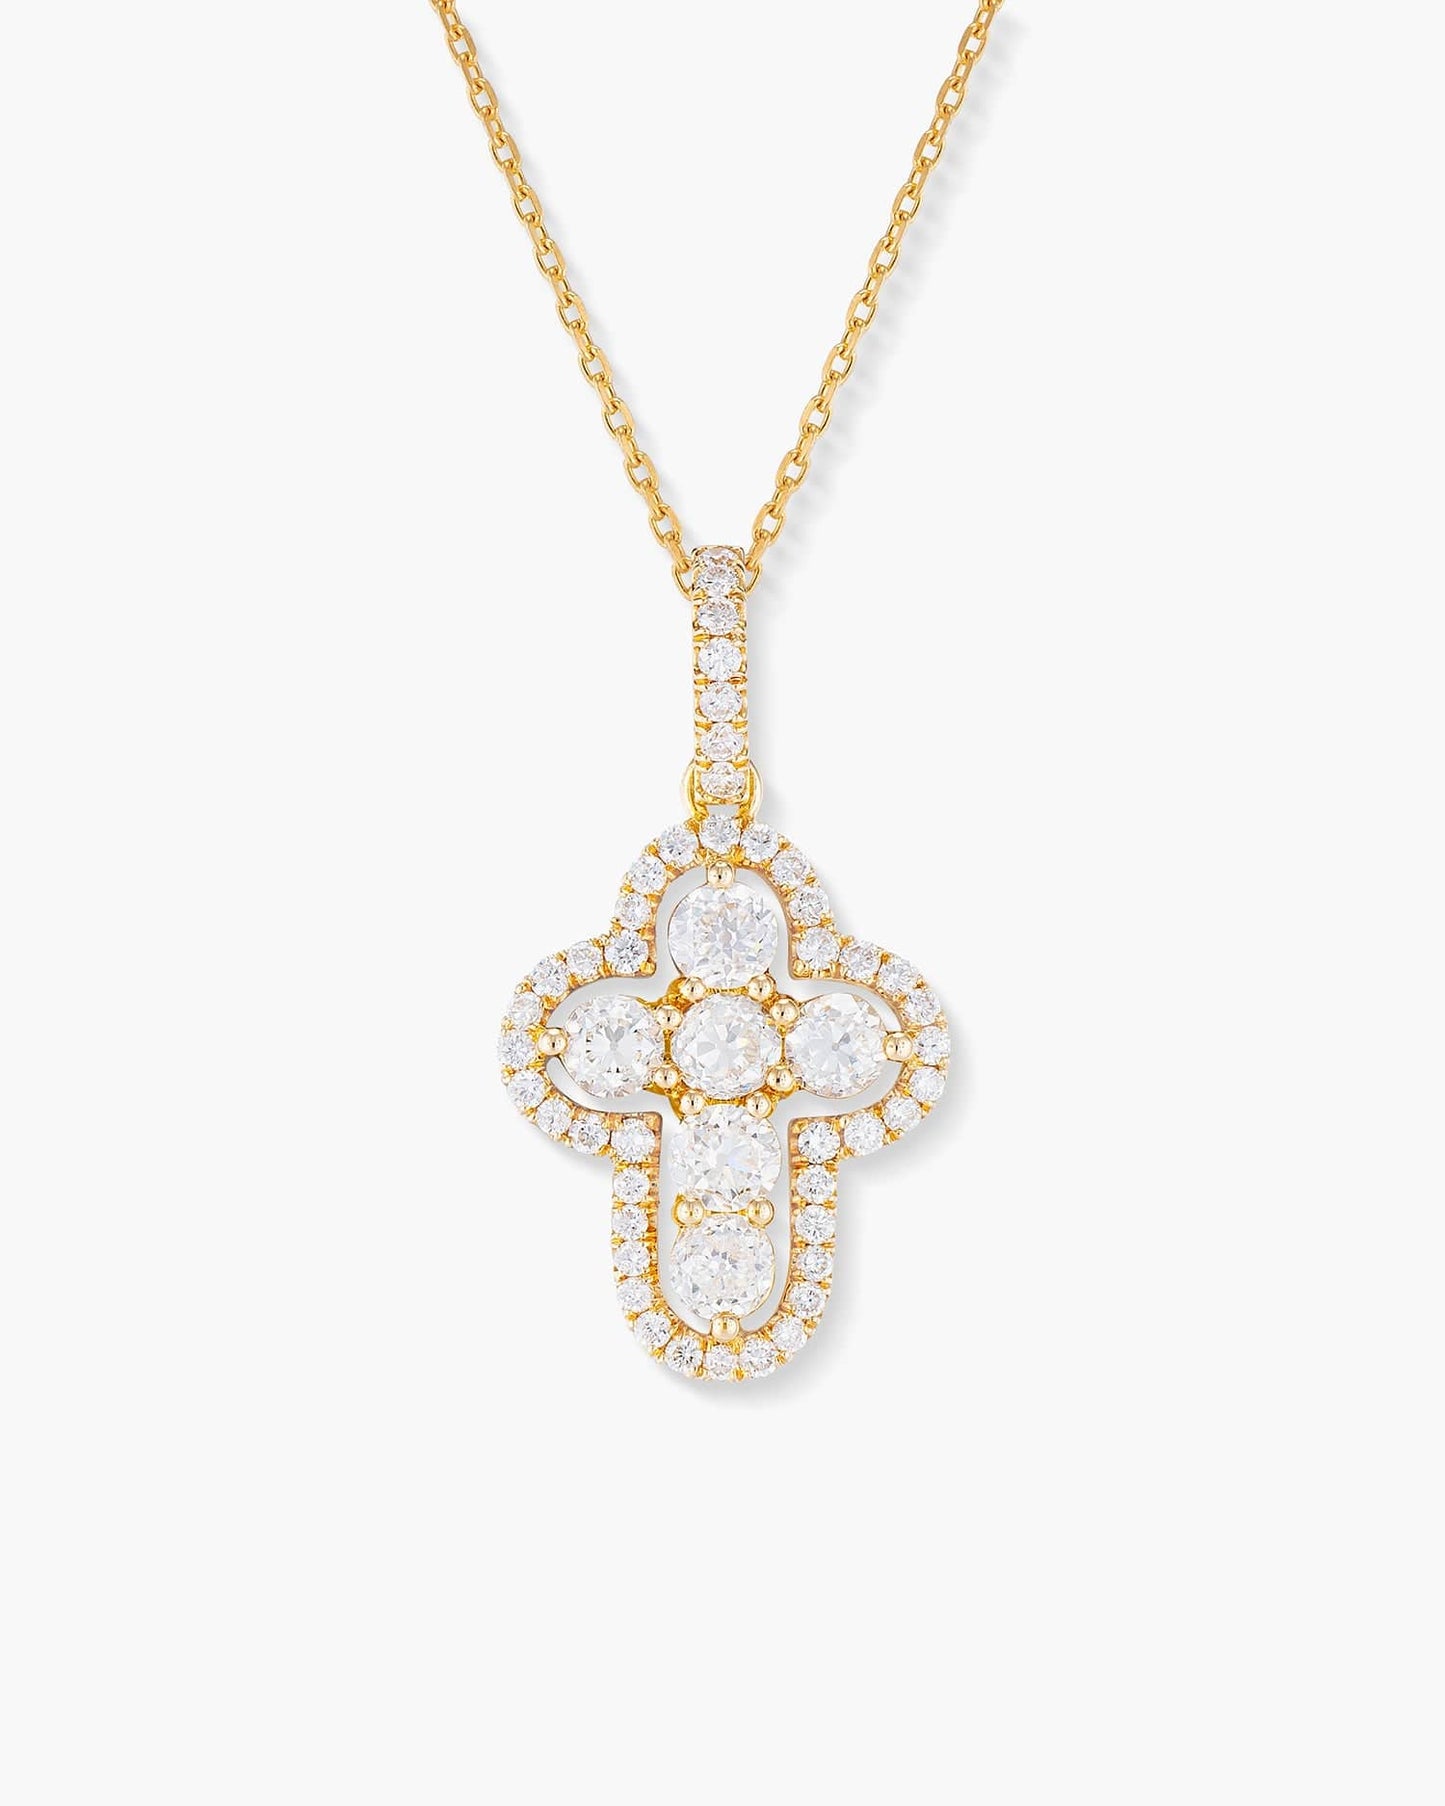 Old European Cut Diamond Cross Pendant Necklace, 1.22 carats